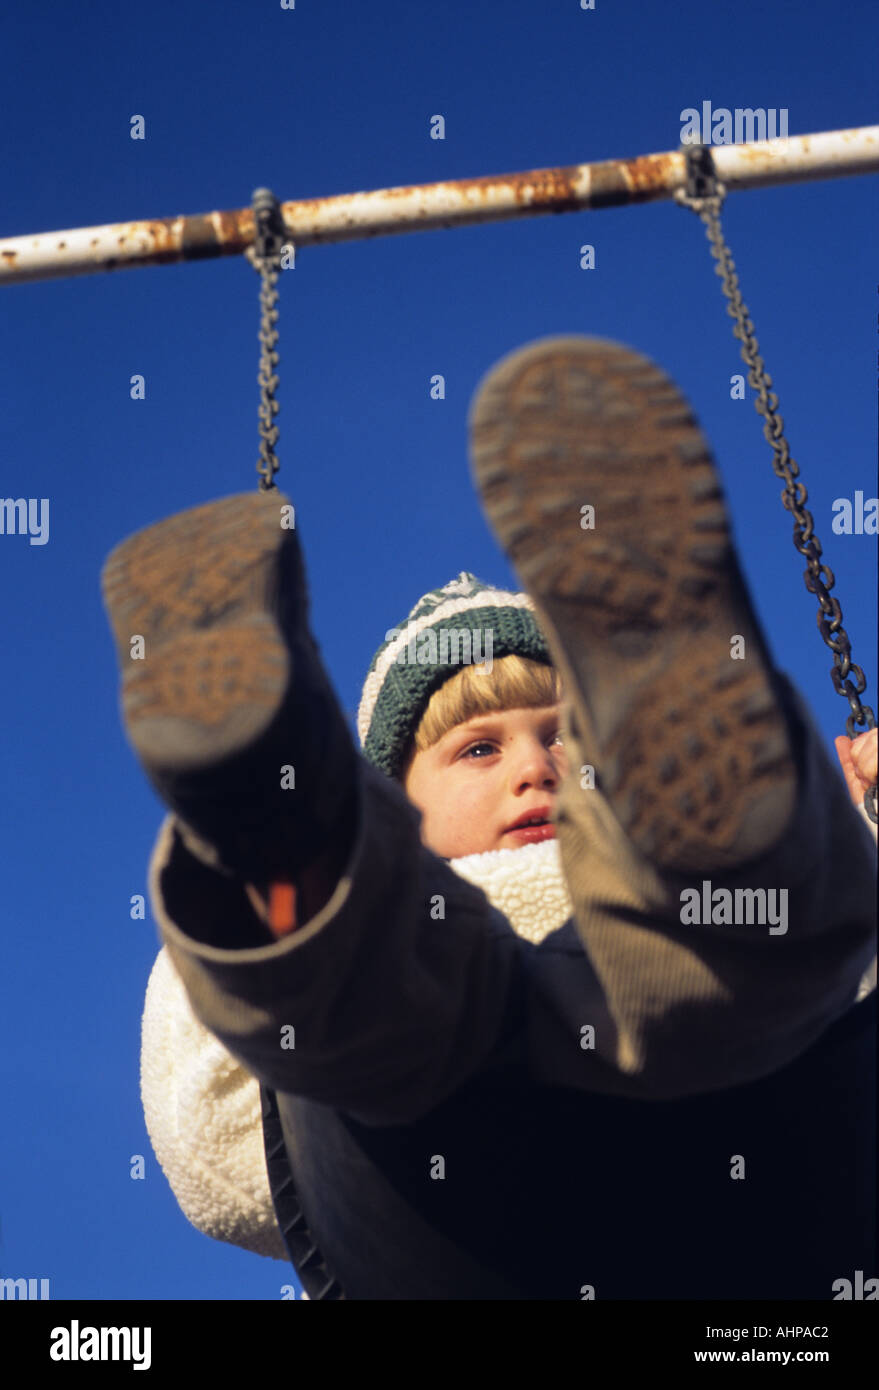 Swinging sur enfant garçon swing on Swing Banque D'Images